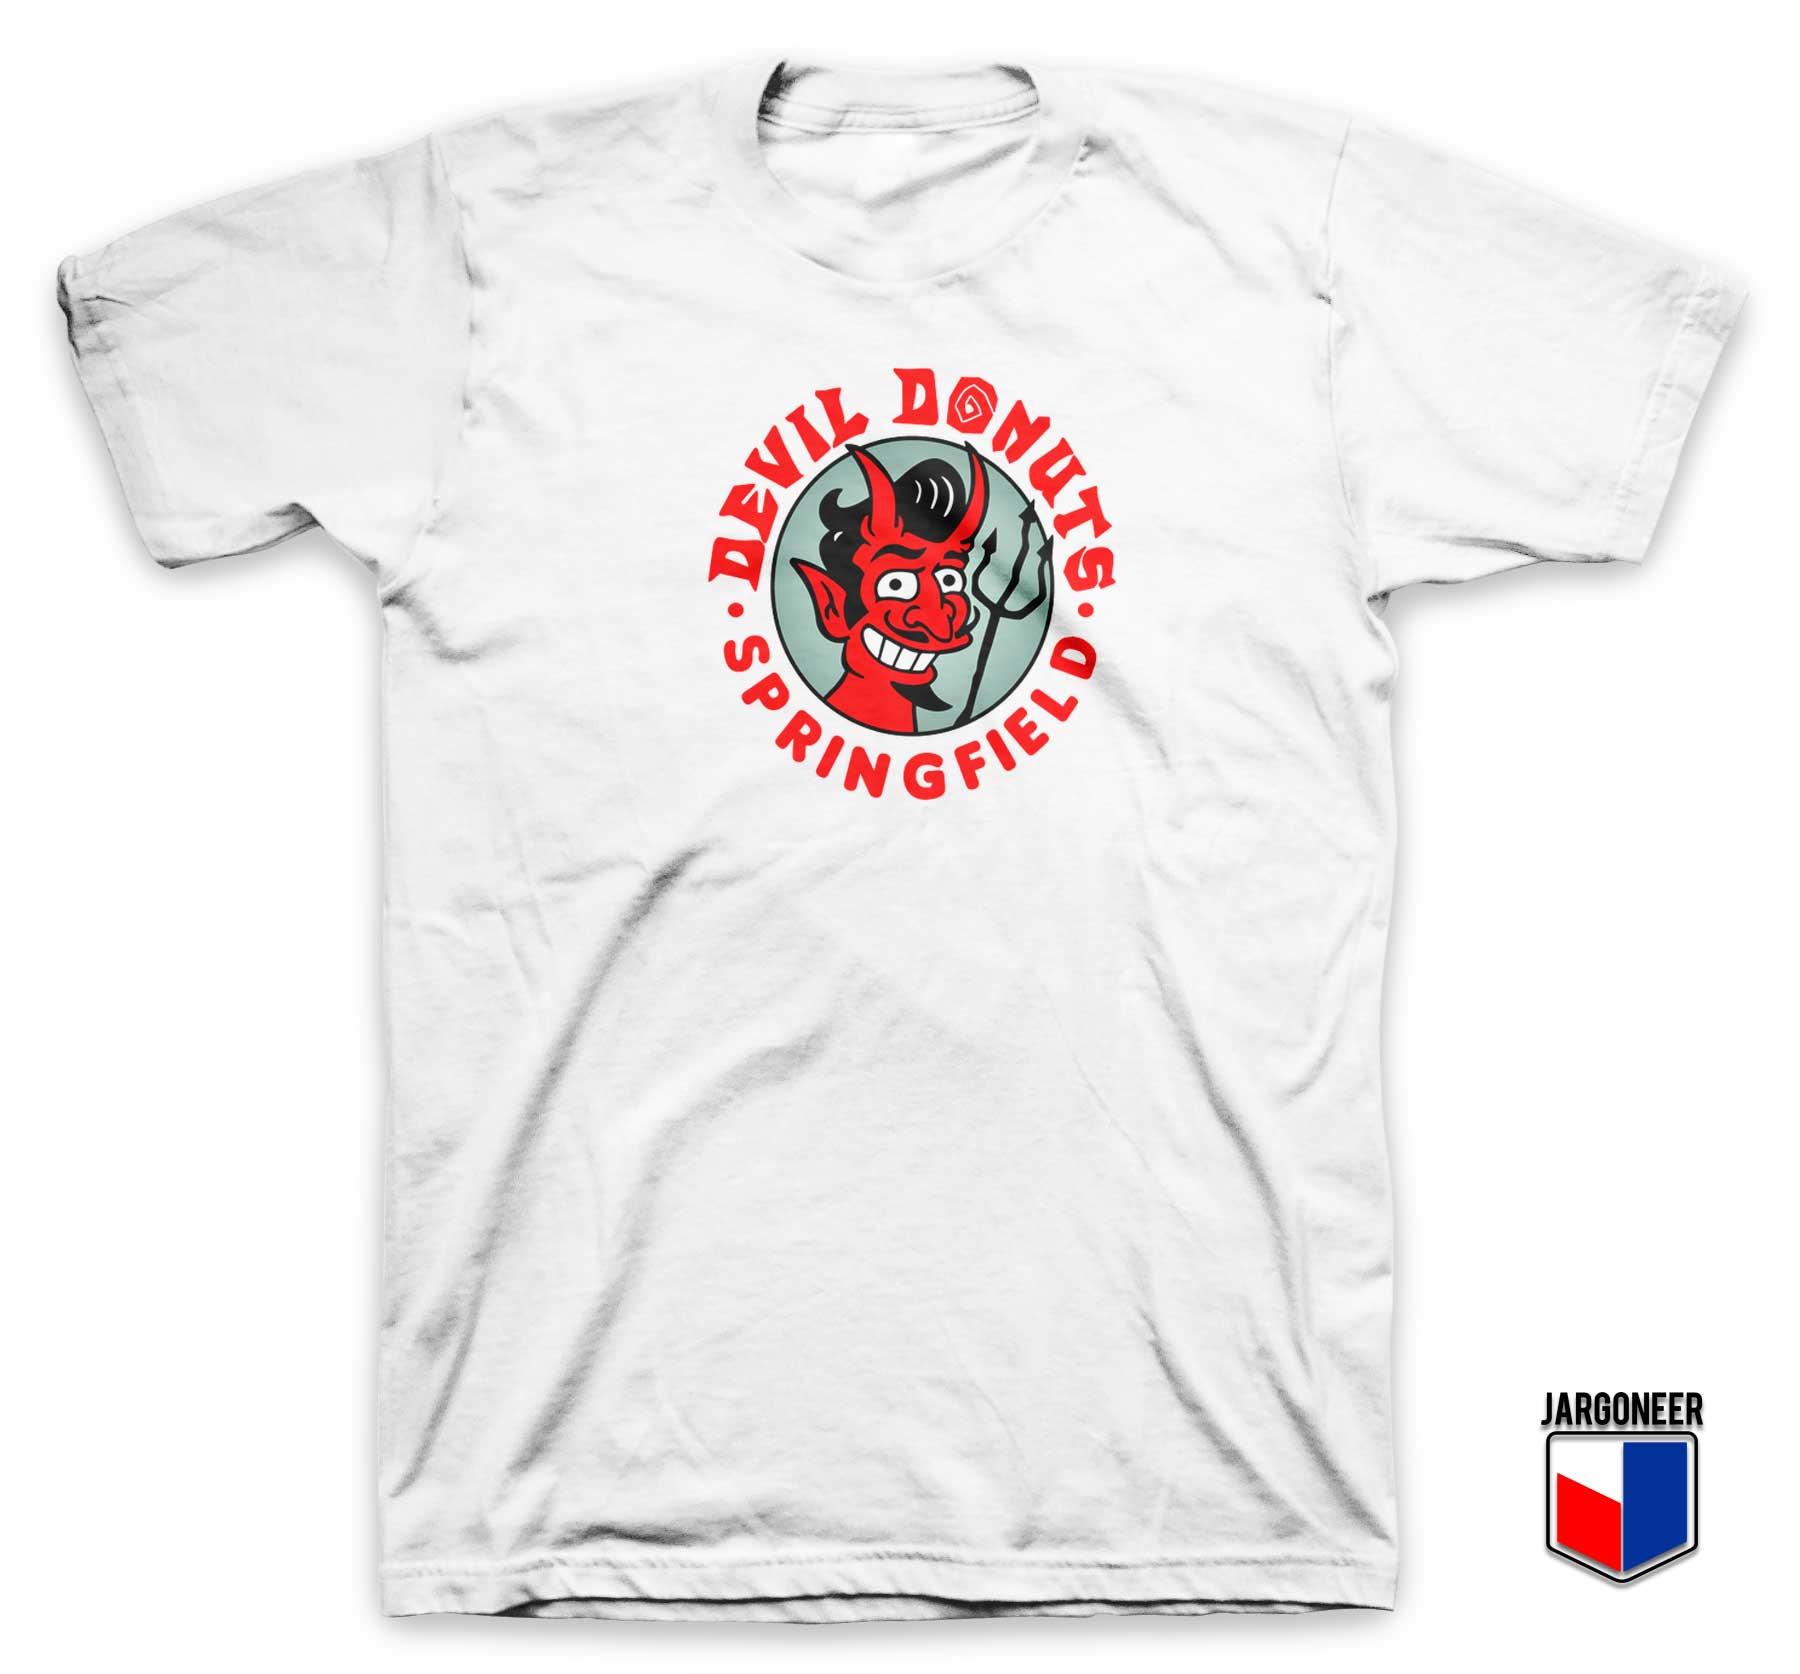 Devil Donut Springfield T Shirt - Shop Unique Graphic Cool Shirt Designs